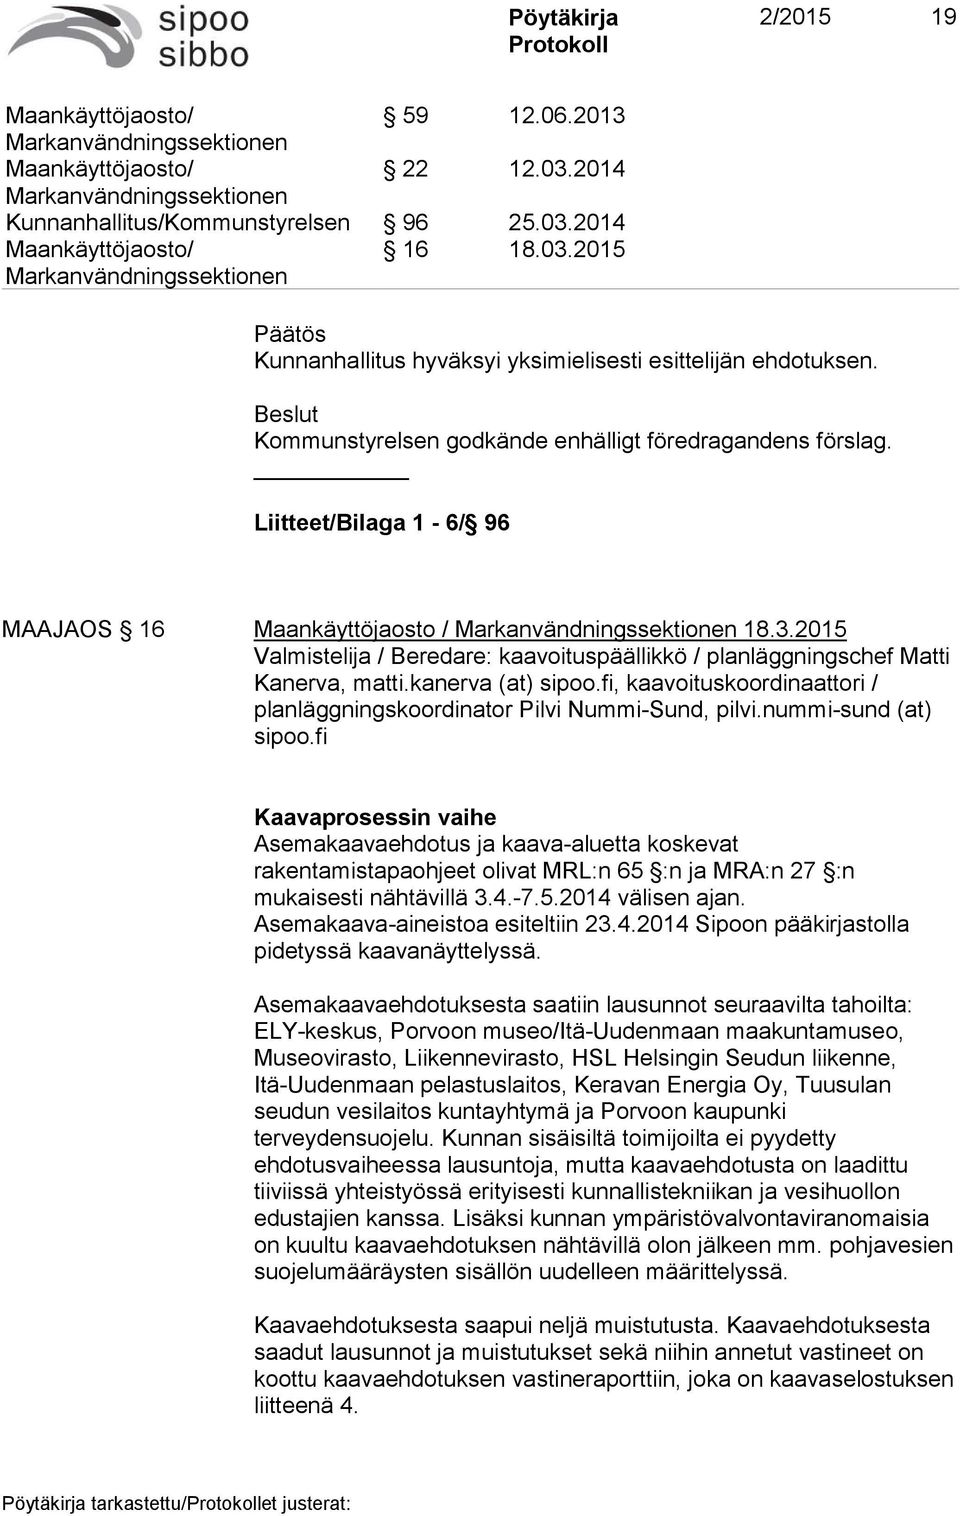 2015 Valmistelija / Beredare: kaavoituspäällikkö / planläggningschef Matti Kanerva, matti.kanerva (at) sipoo.fi, kaavoituskoordinaattori / planläggningskoordinator Pilvi Nummi-Sund, pilvi.